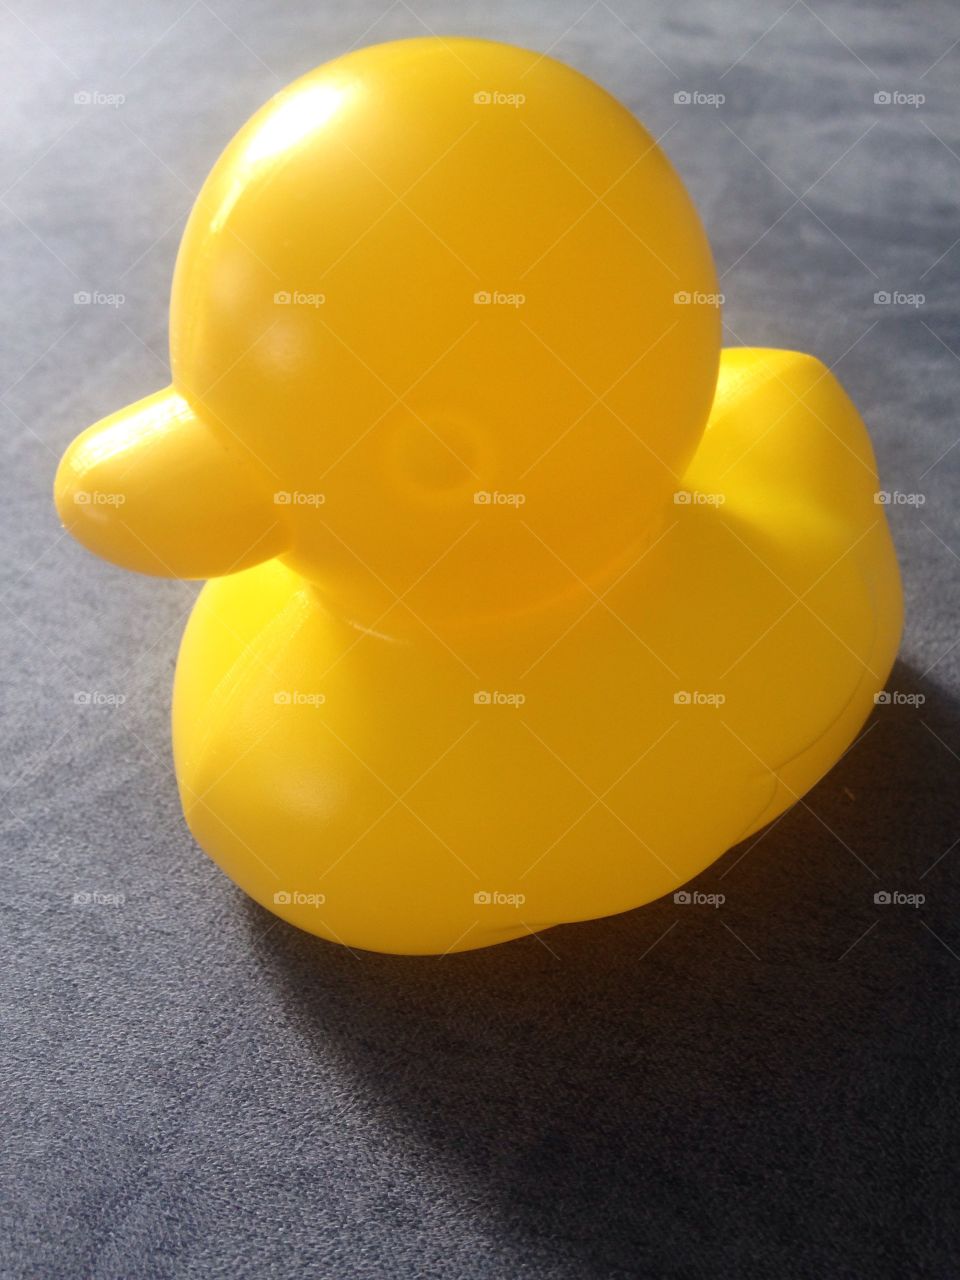 Quack quack